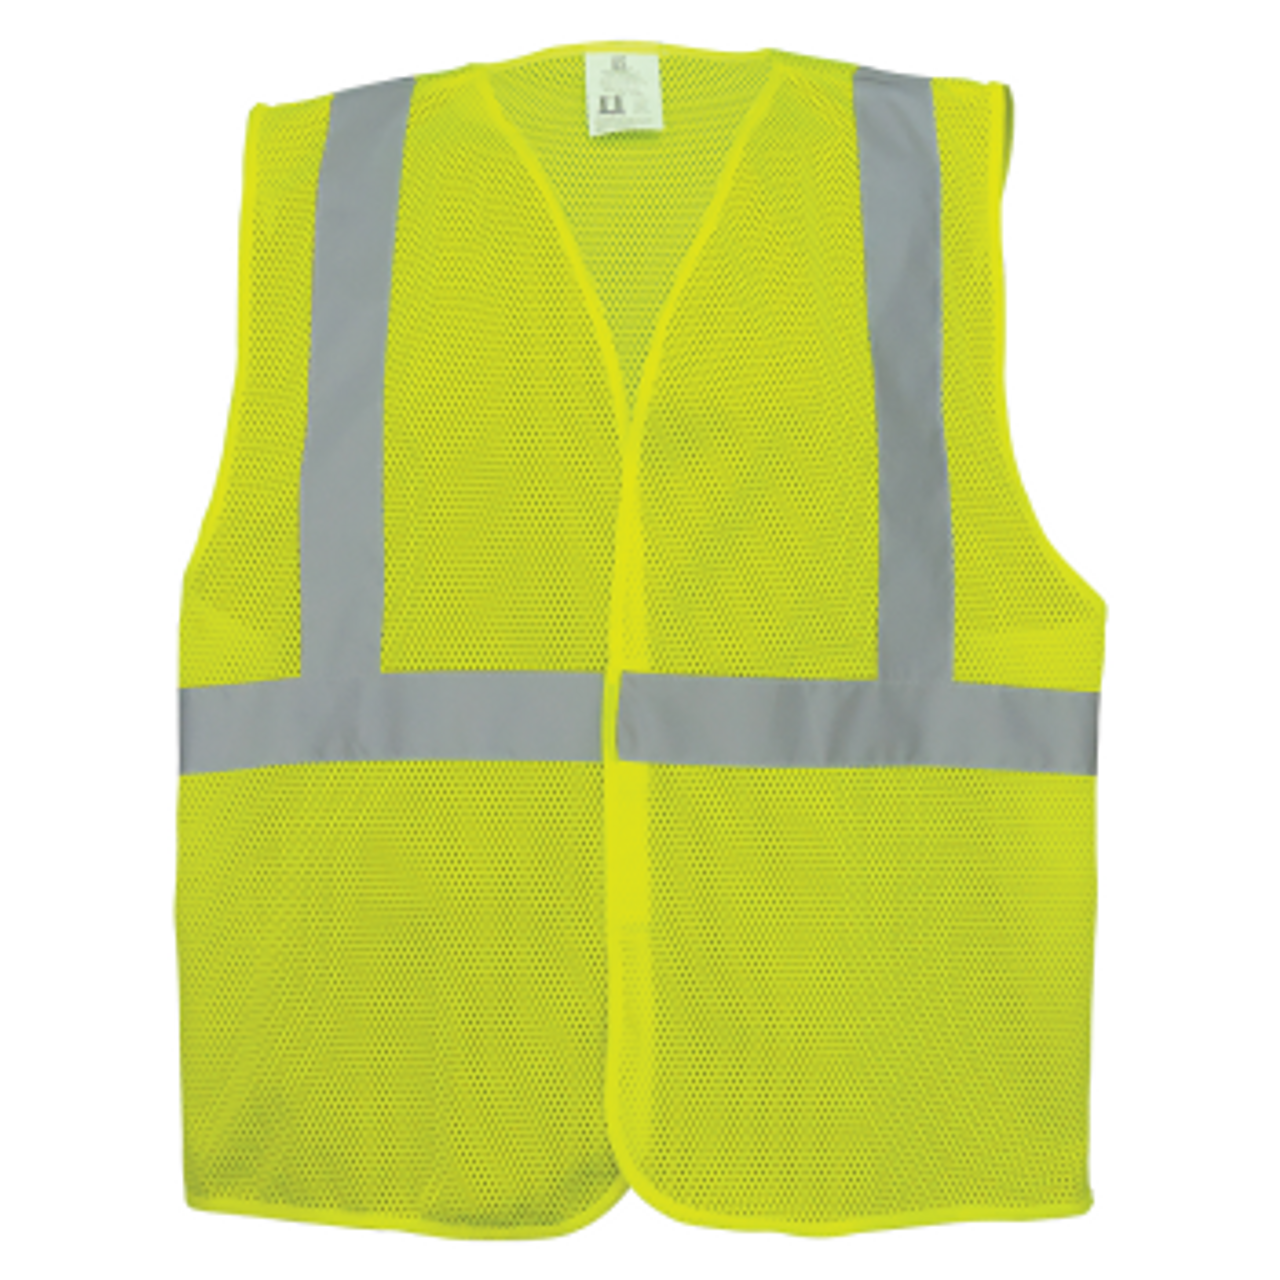 Hi Vis Yellow Safety Vest - Reflective Work Vests